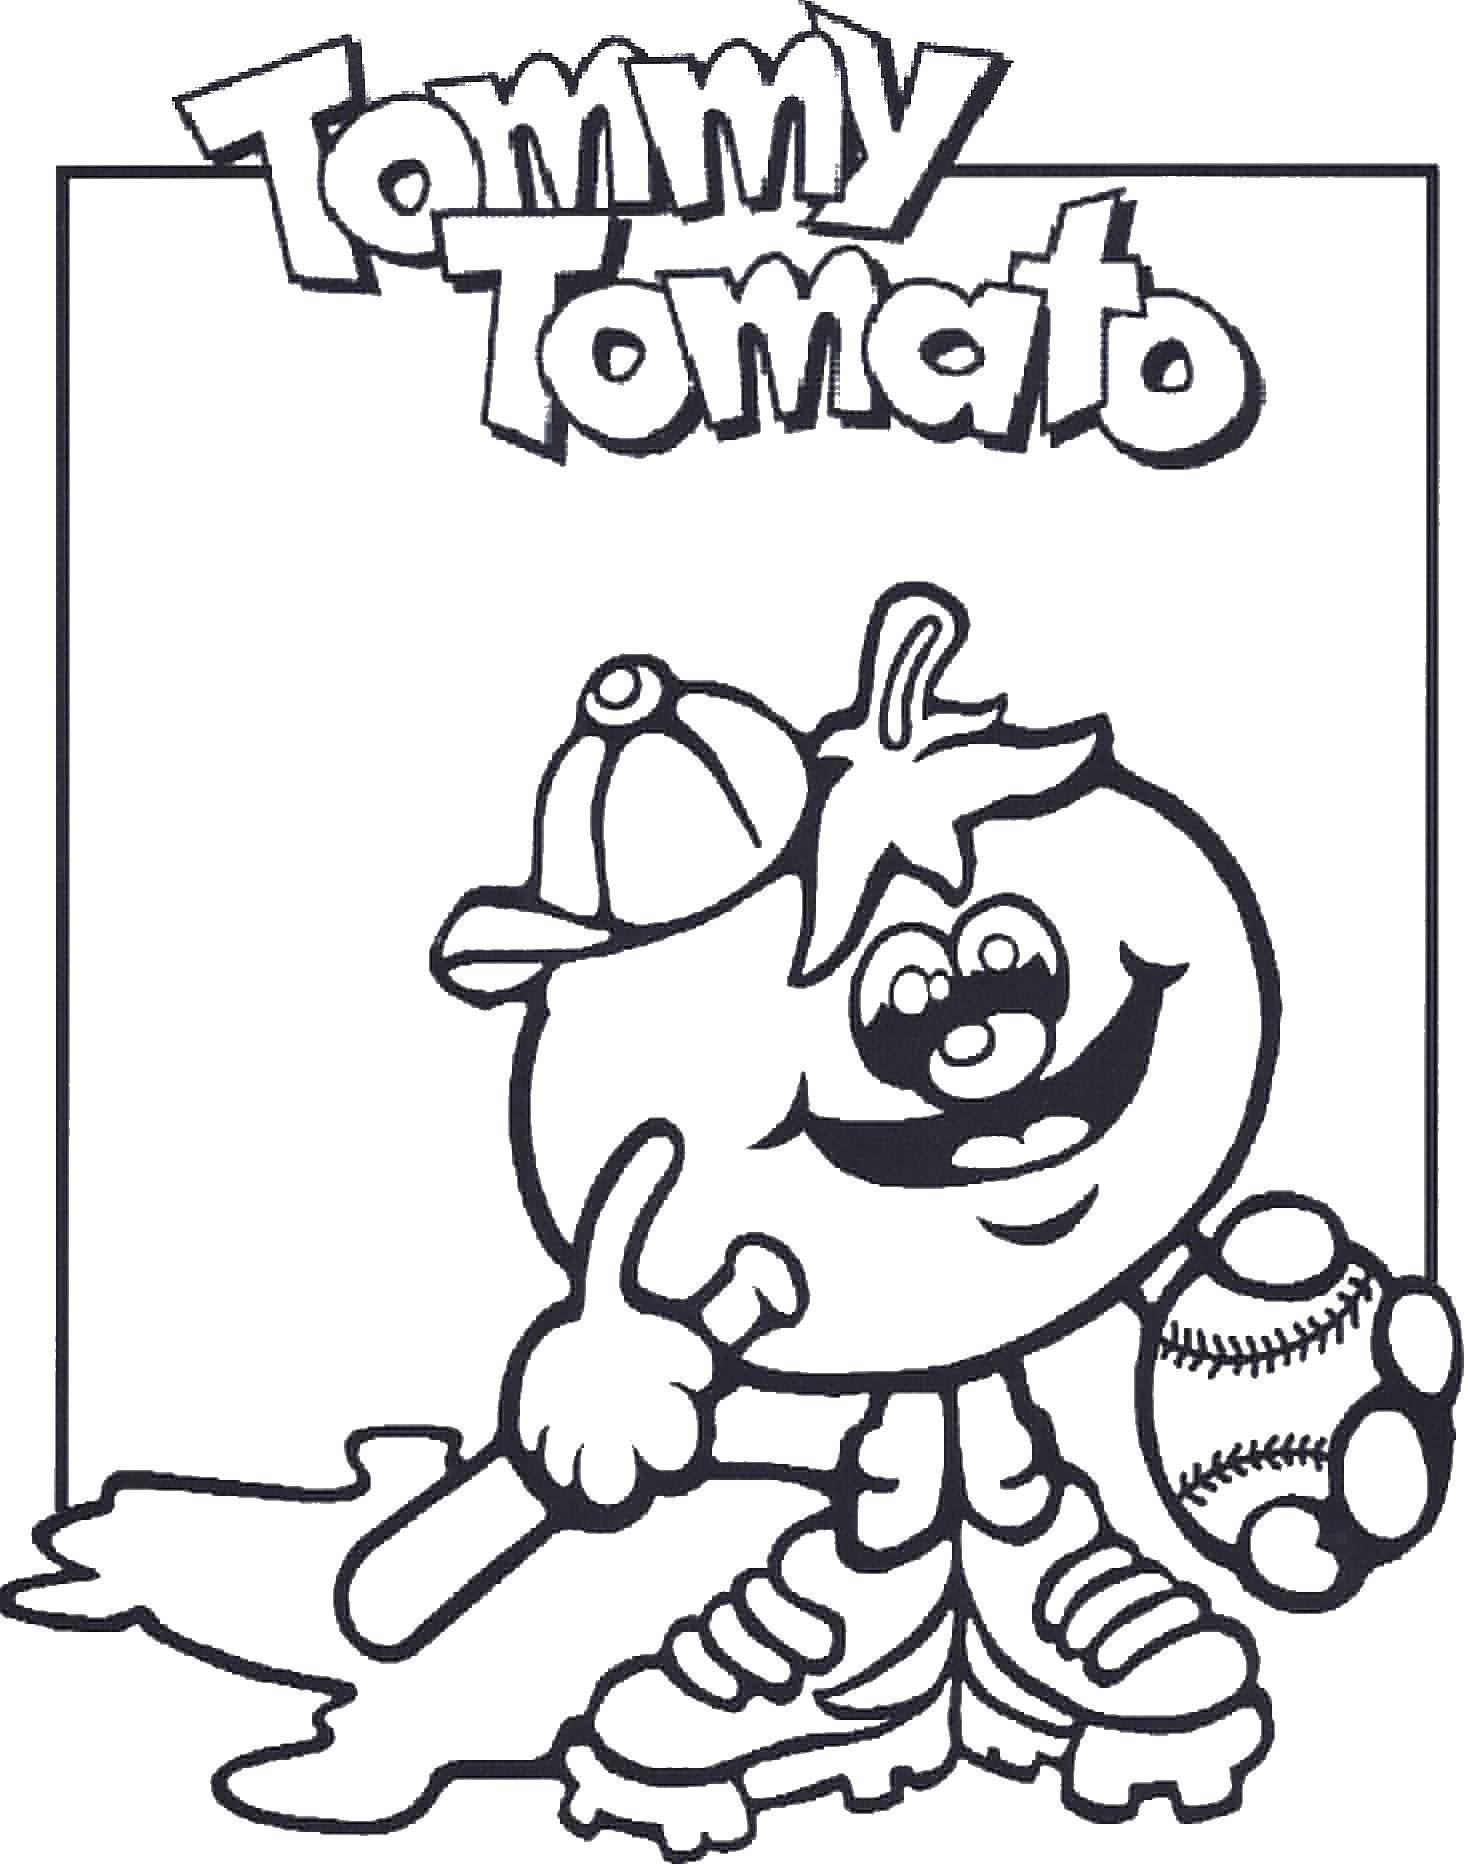 Опис: розмальовки  Томмі томат. Категорія: Їжа. Теги:  томат, овочі.